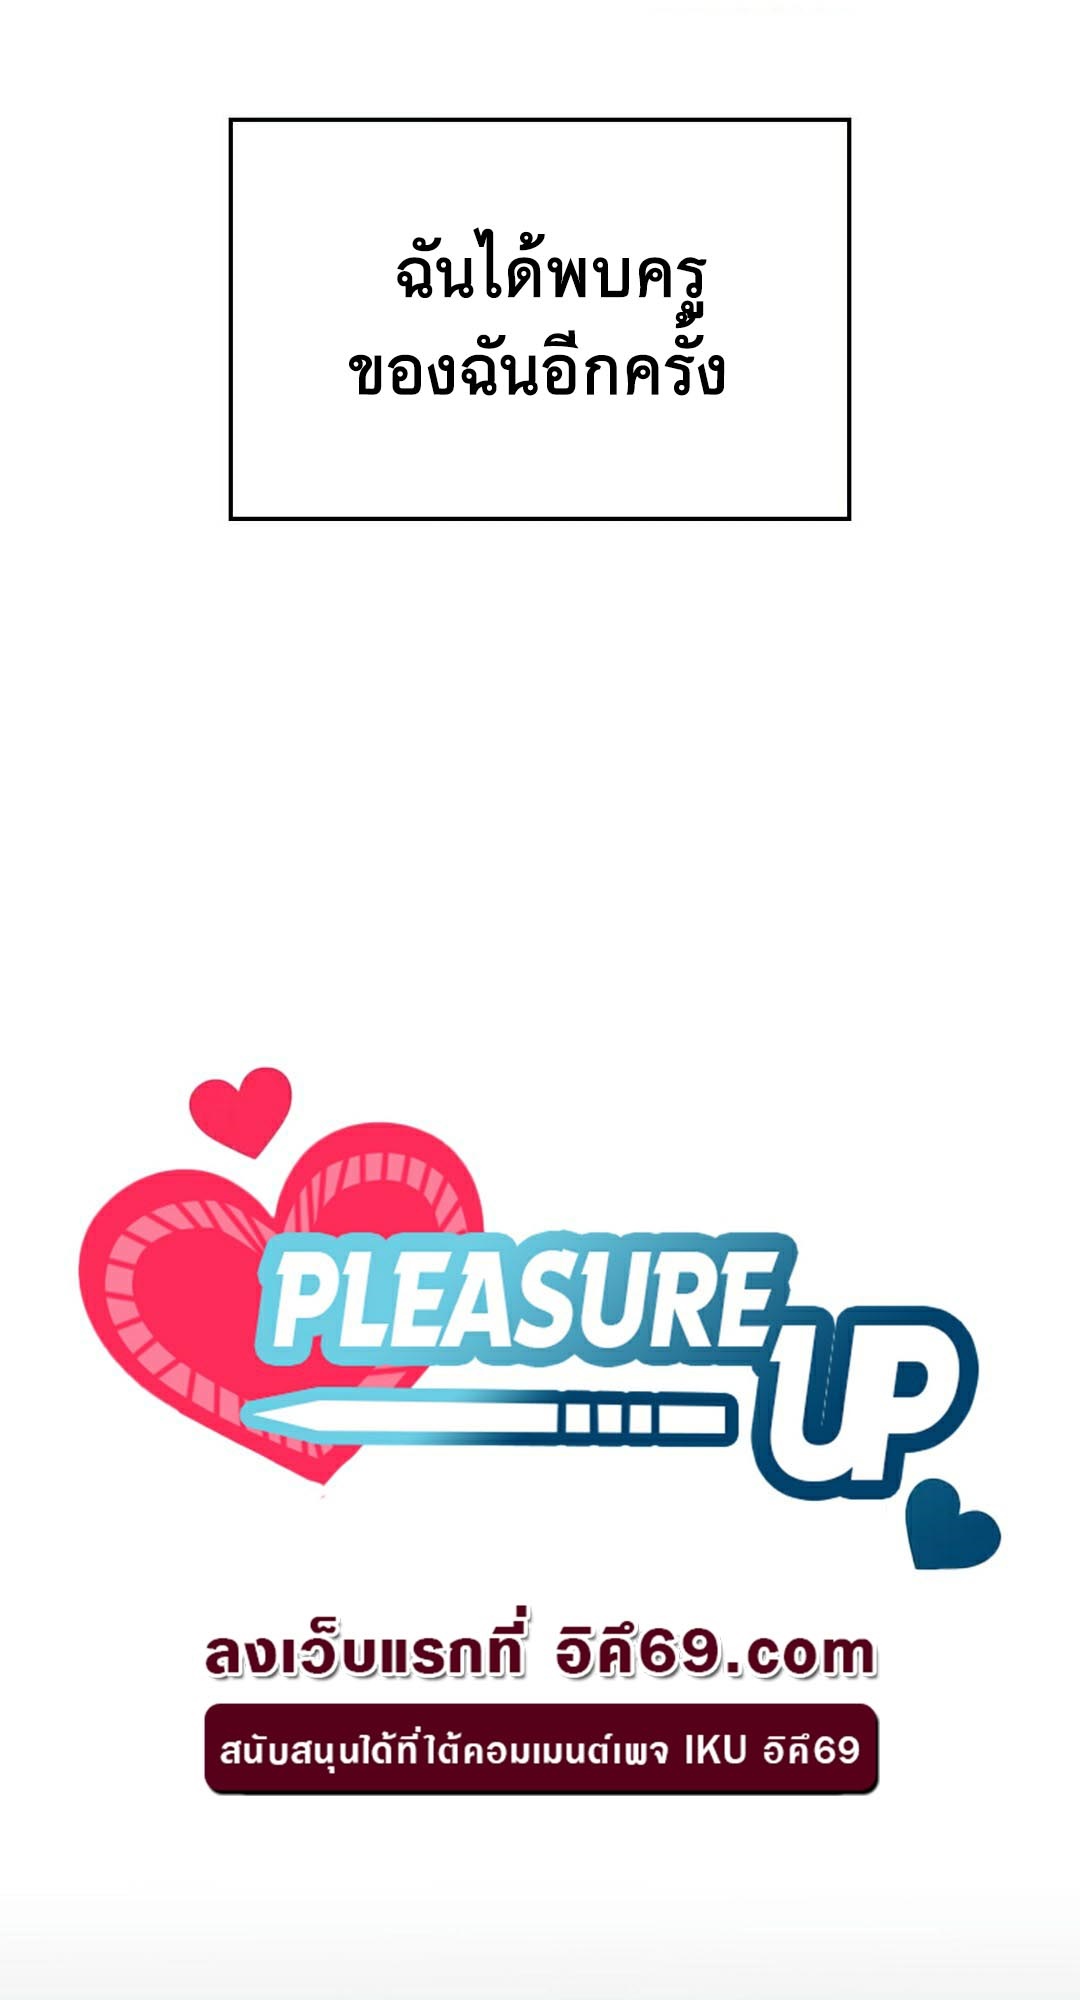 อ่านโดจิน เรื่อง Pleasure up! 23 10